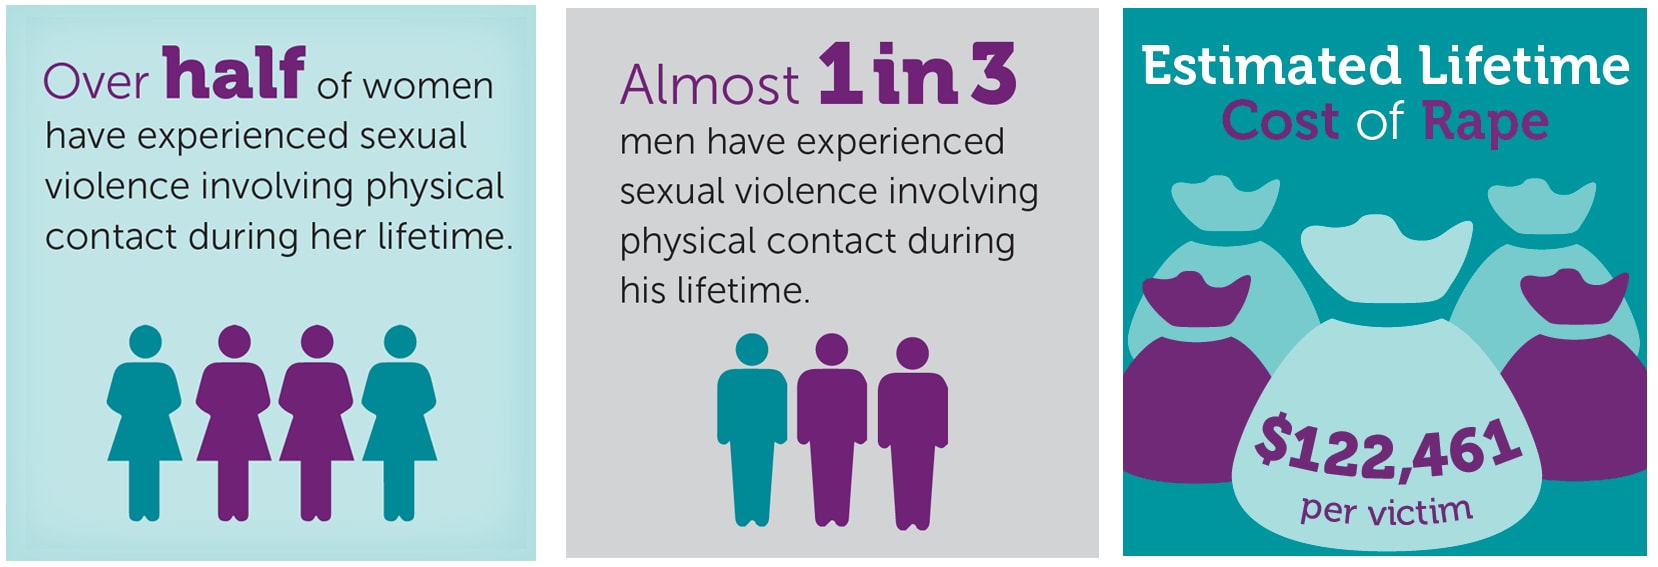 Over half of women, almost 1 in 3 men experienced SV. 1 in 4 women about 1 in 26 men experienced completed or attempted rape